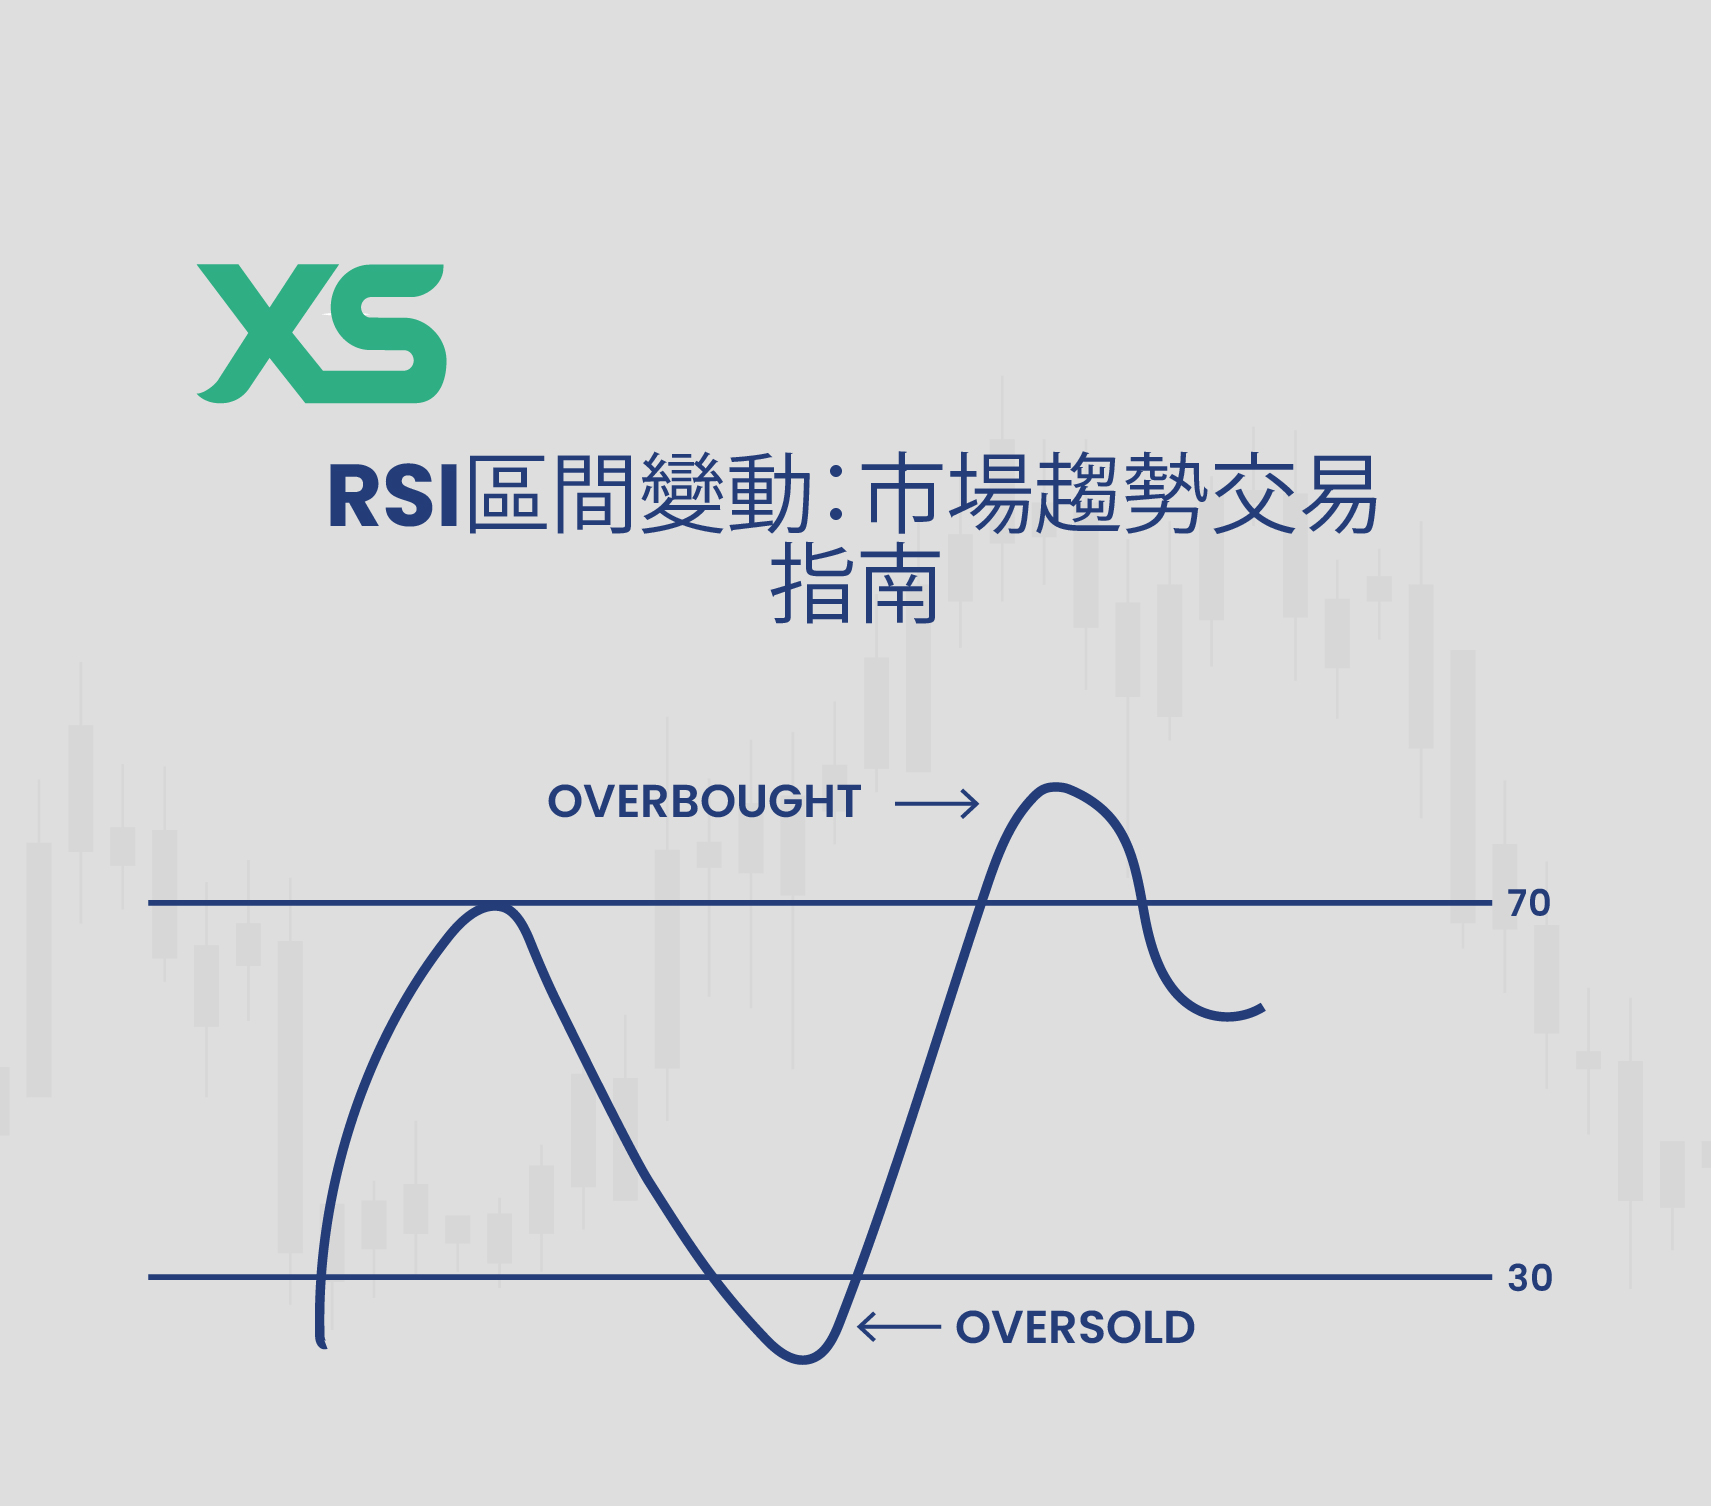 RSI 區間變動 - XS